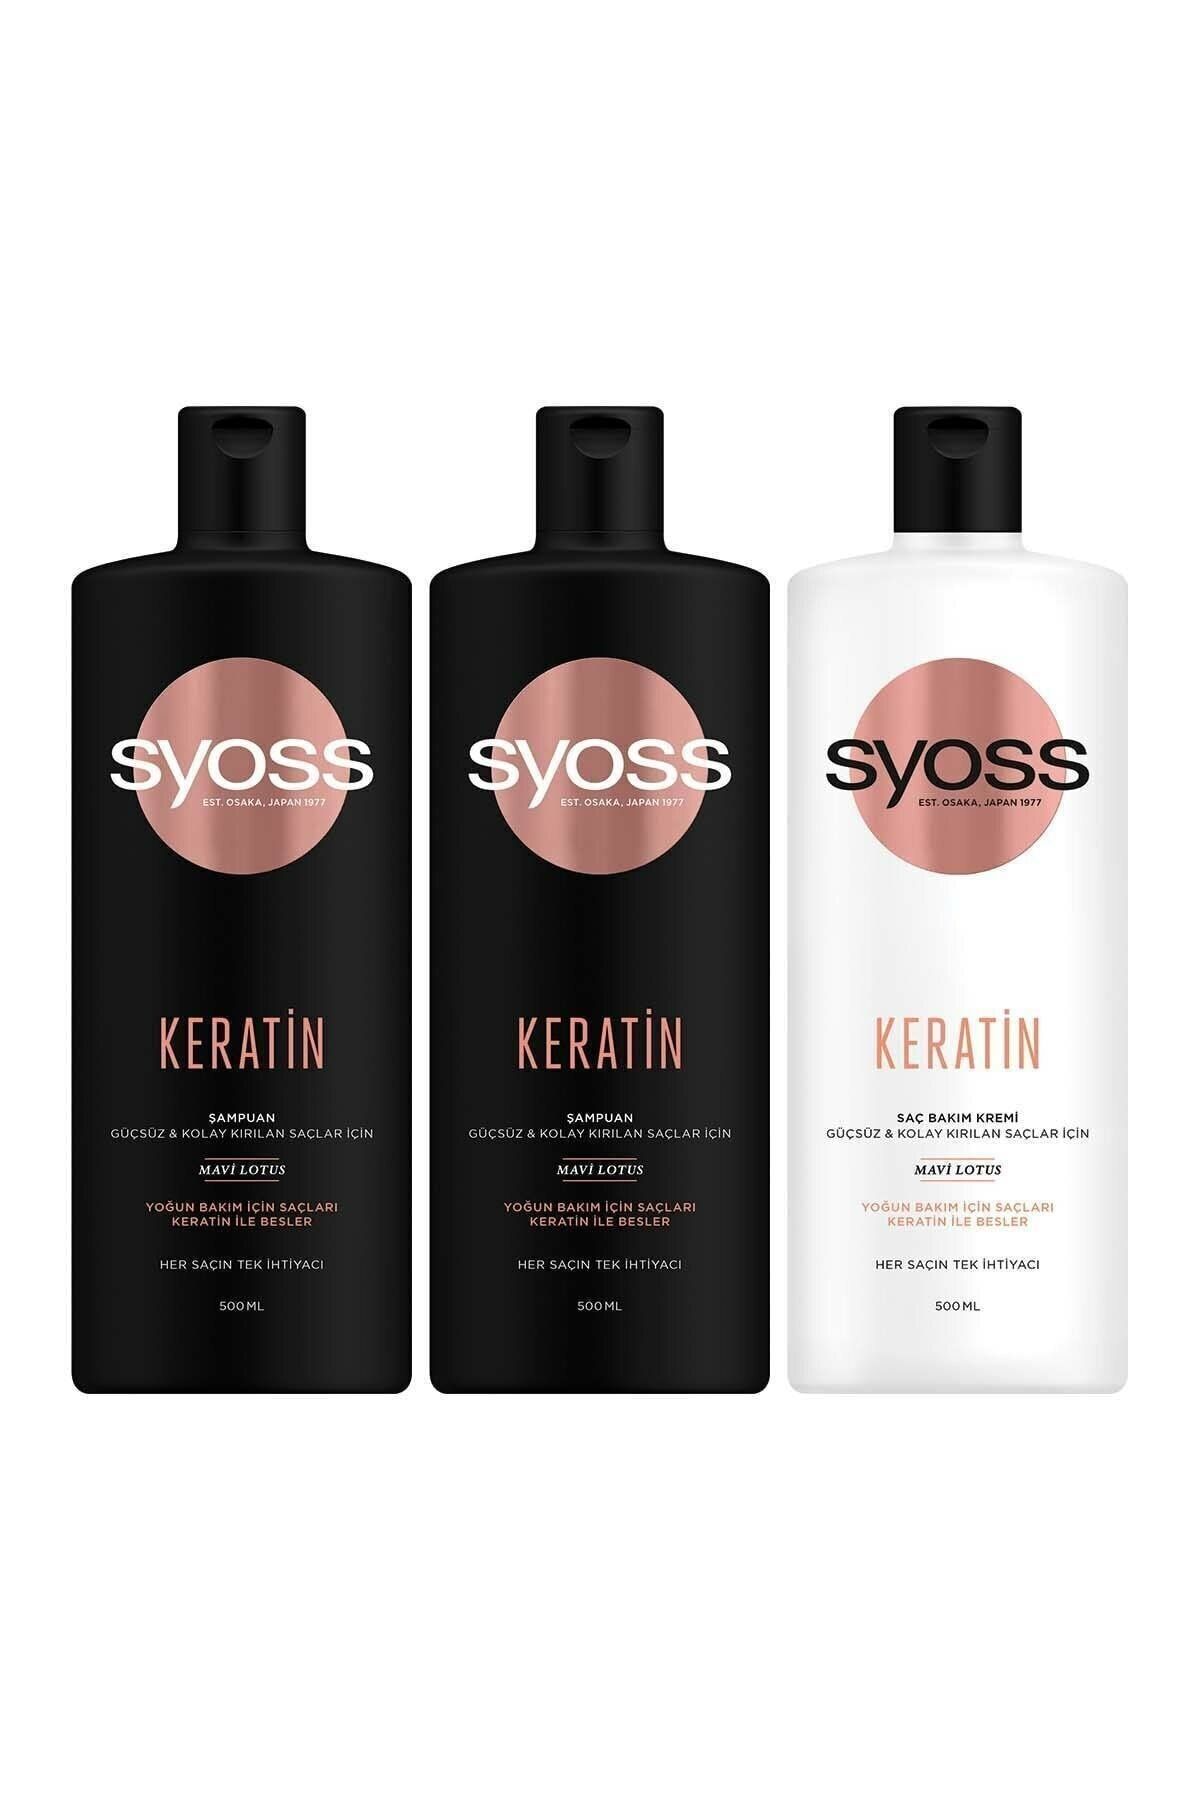 Syoss Keratin Mükemmelliği Şampuan 500 ml X 2 Adet Saç Kremi 500 ml